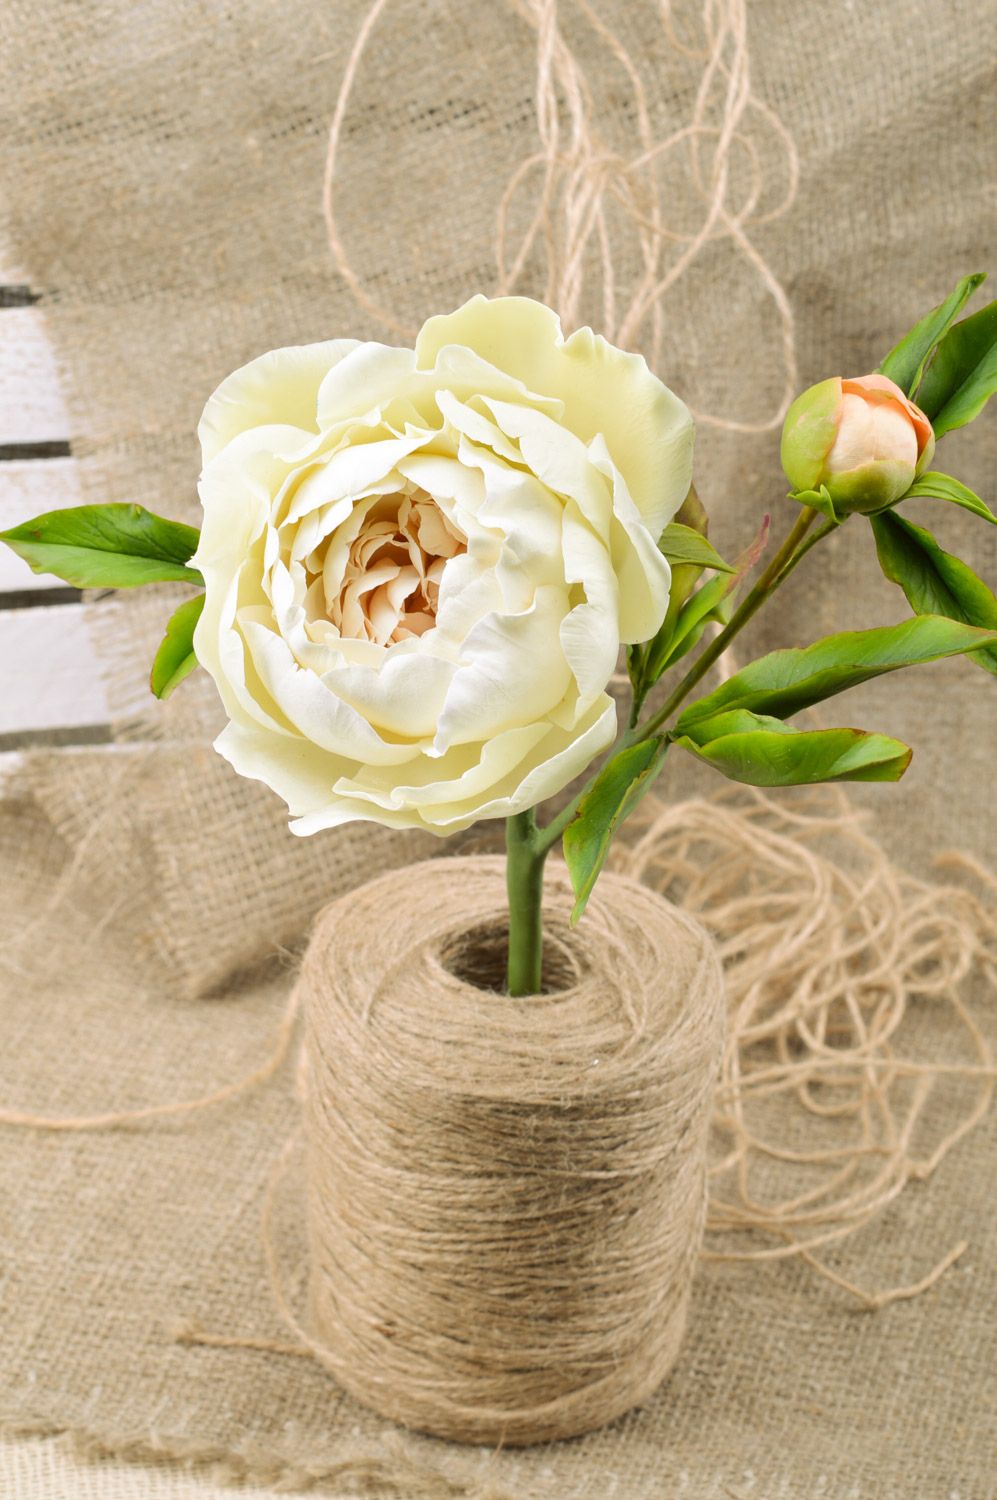 Цветок пиона из полимерной глины ручной работы белый крупный декоративный фото 1